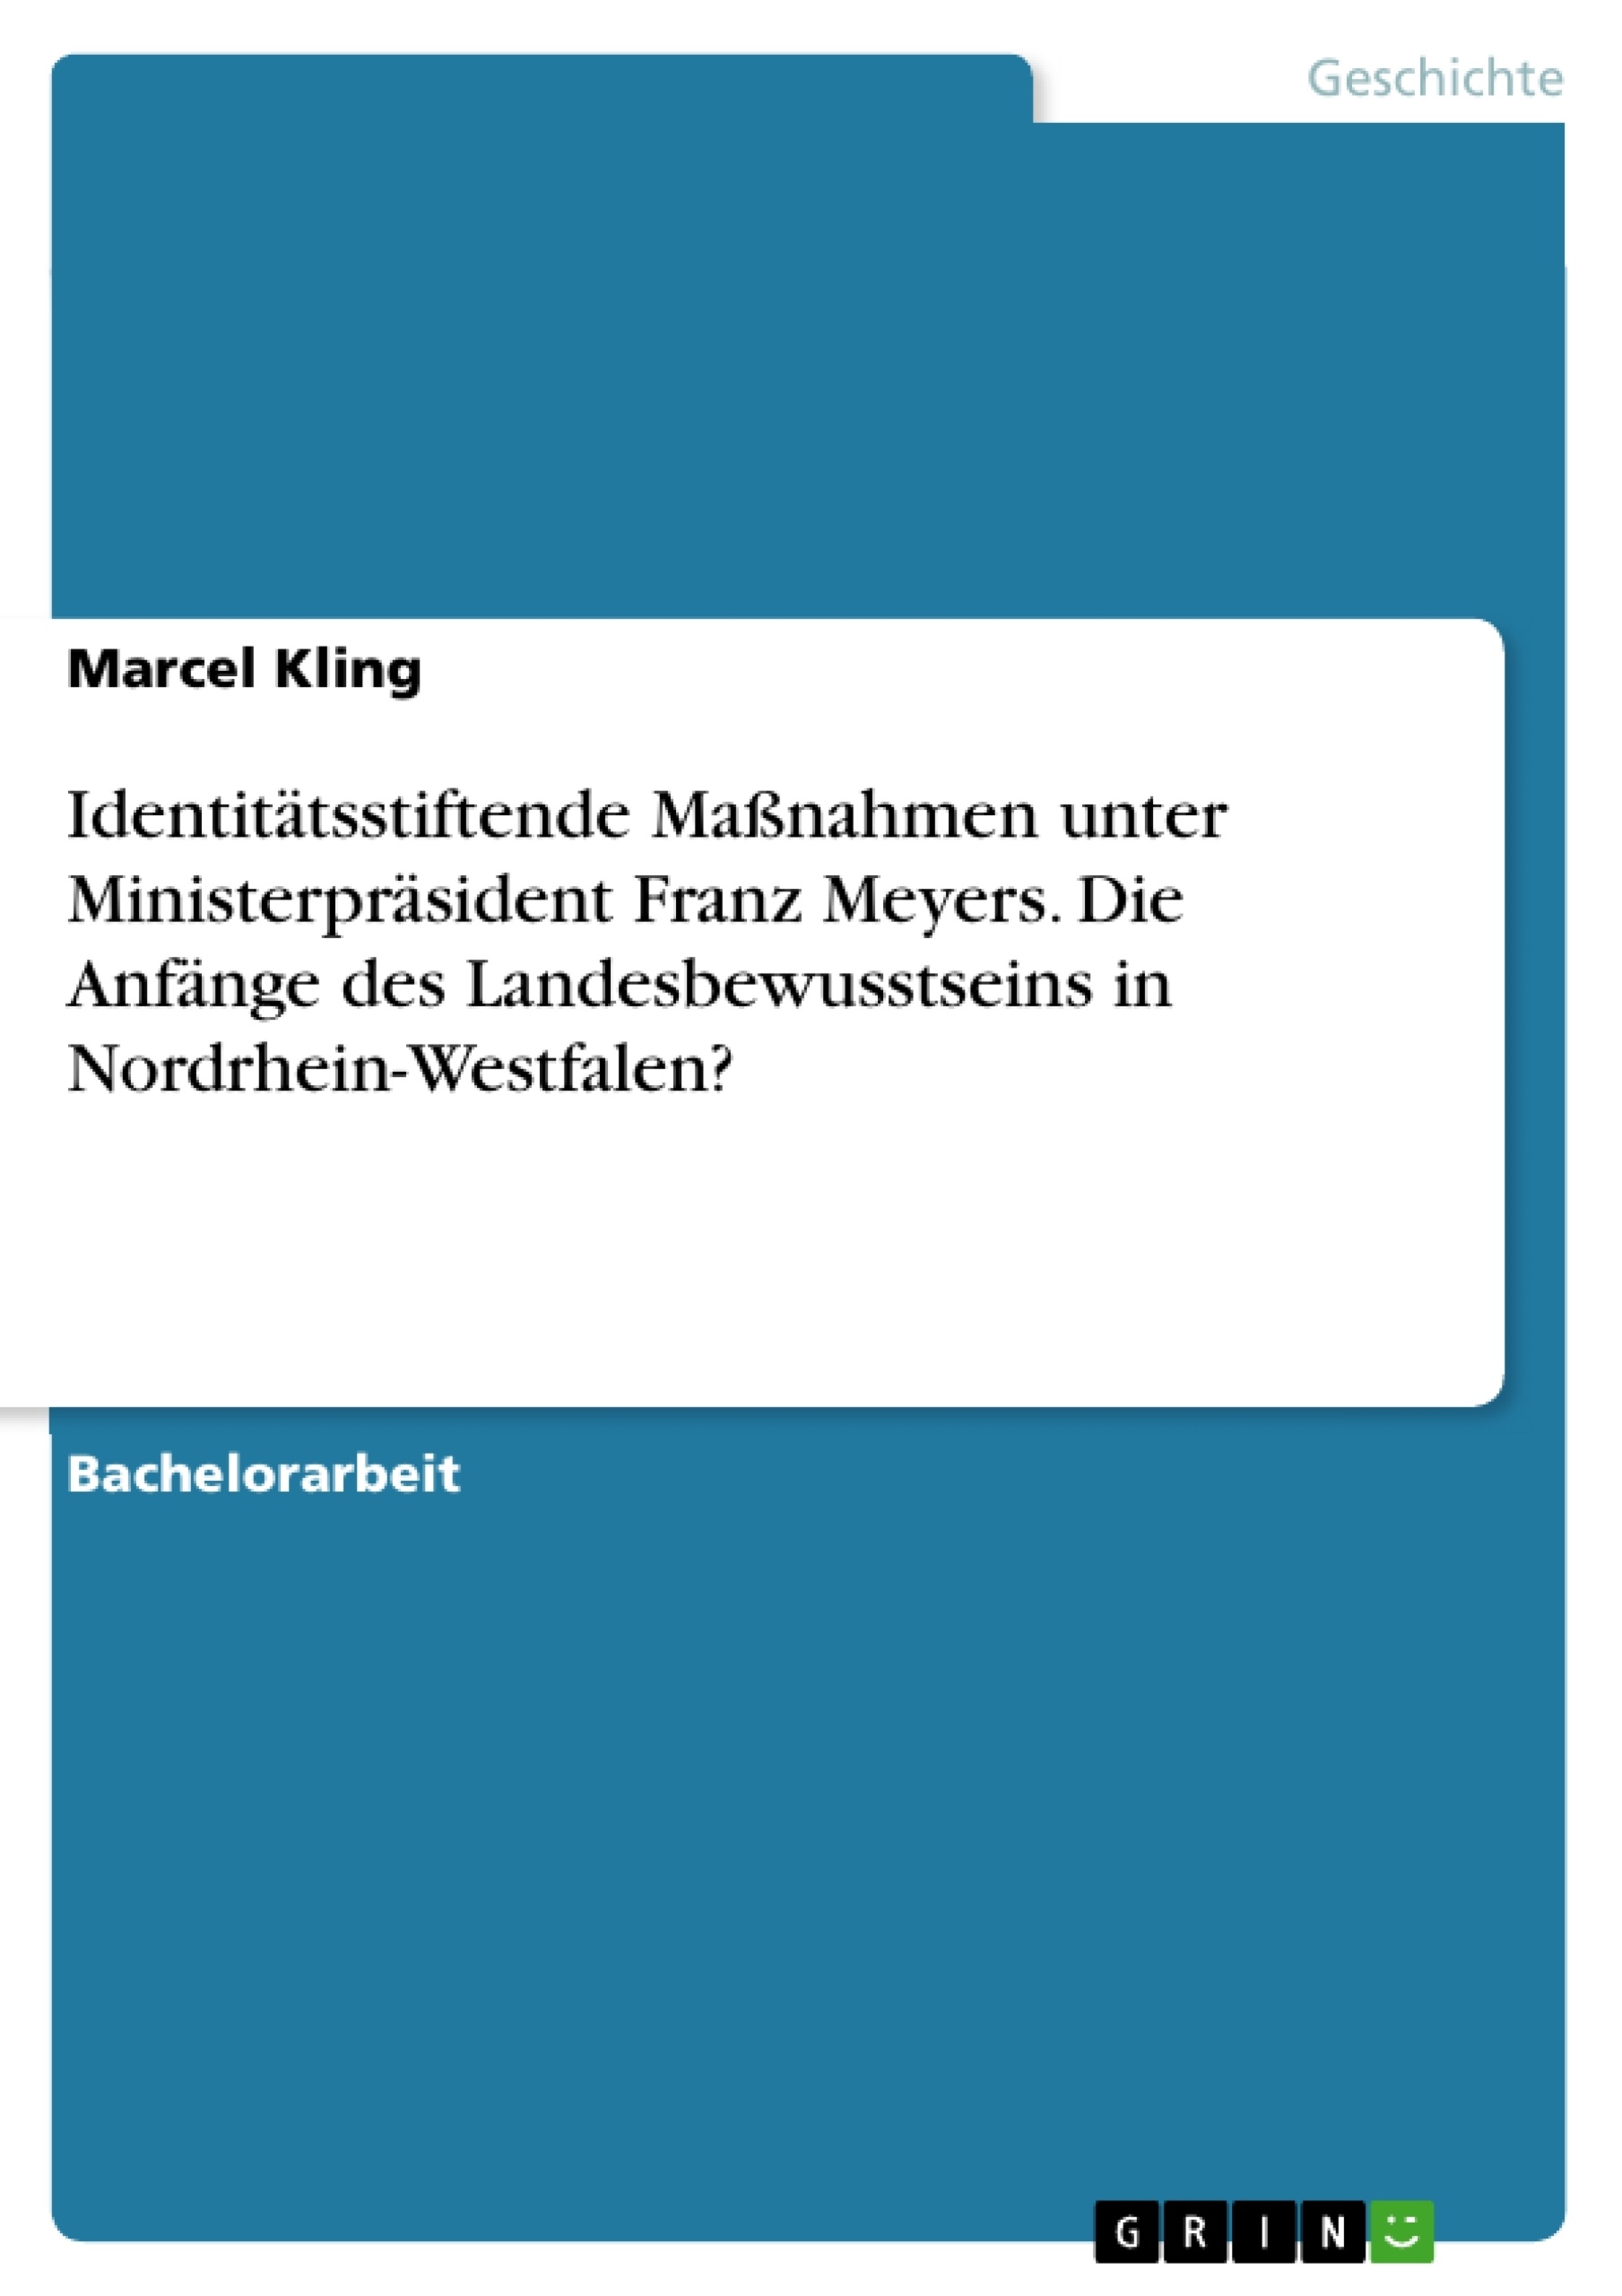 Titel: Identitätsstiftende Maßnahmen unter Ministerpräsident Franz Meyers. Die Anfänge des Landesbewusstseins in Nordrhein-Westfalen?